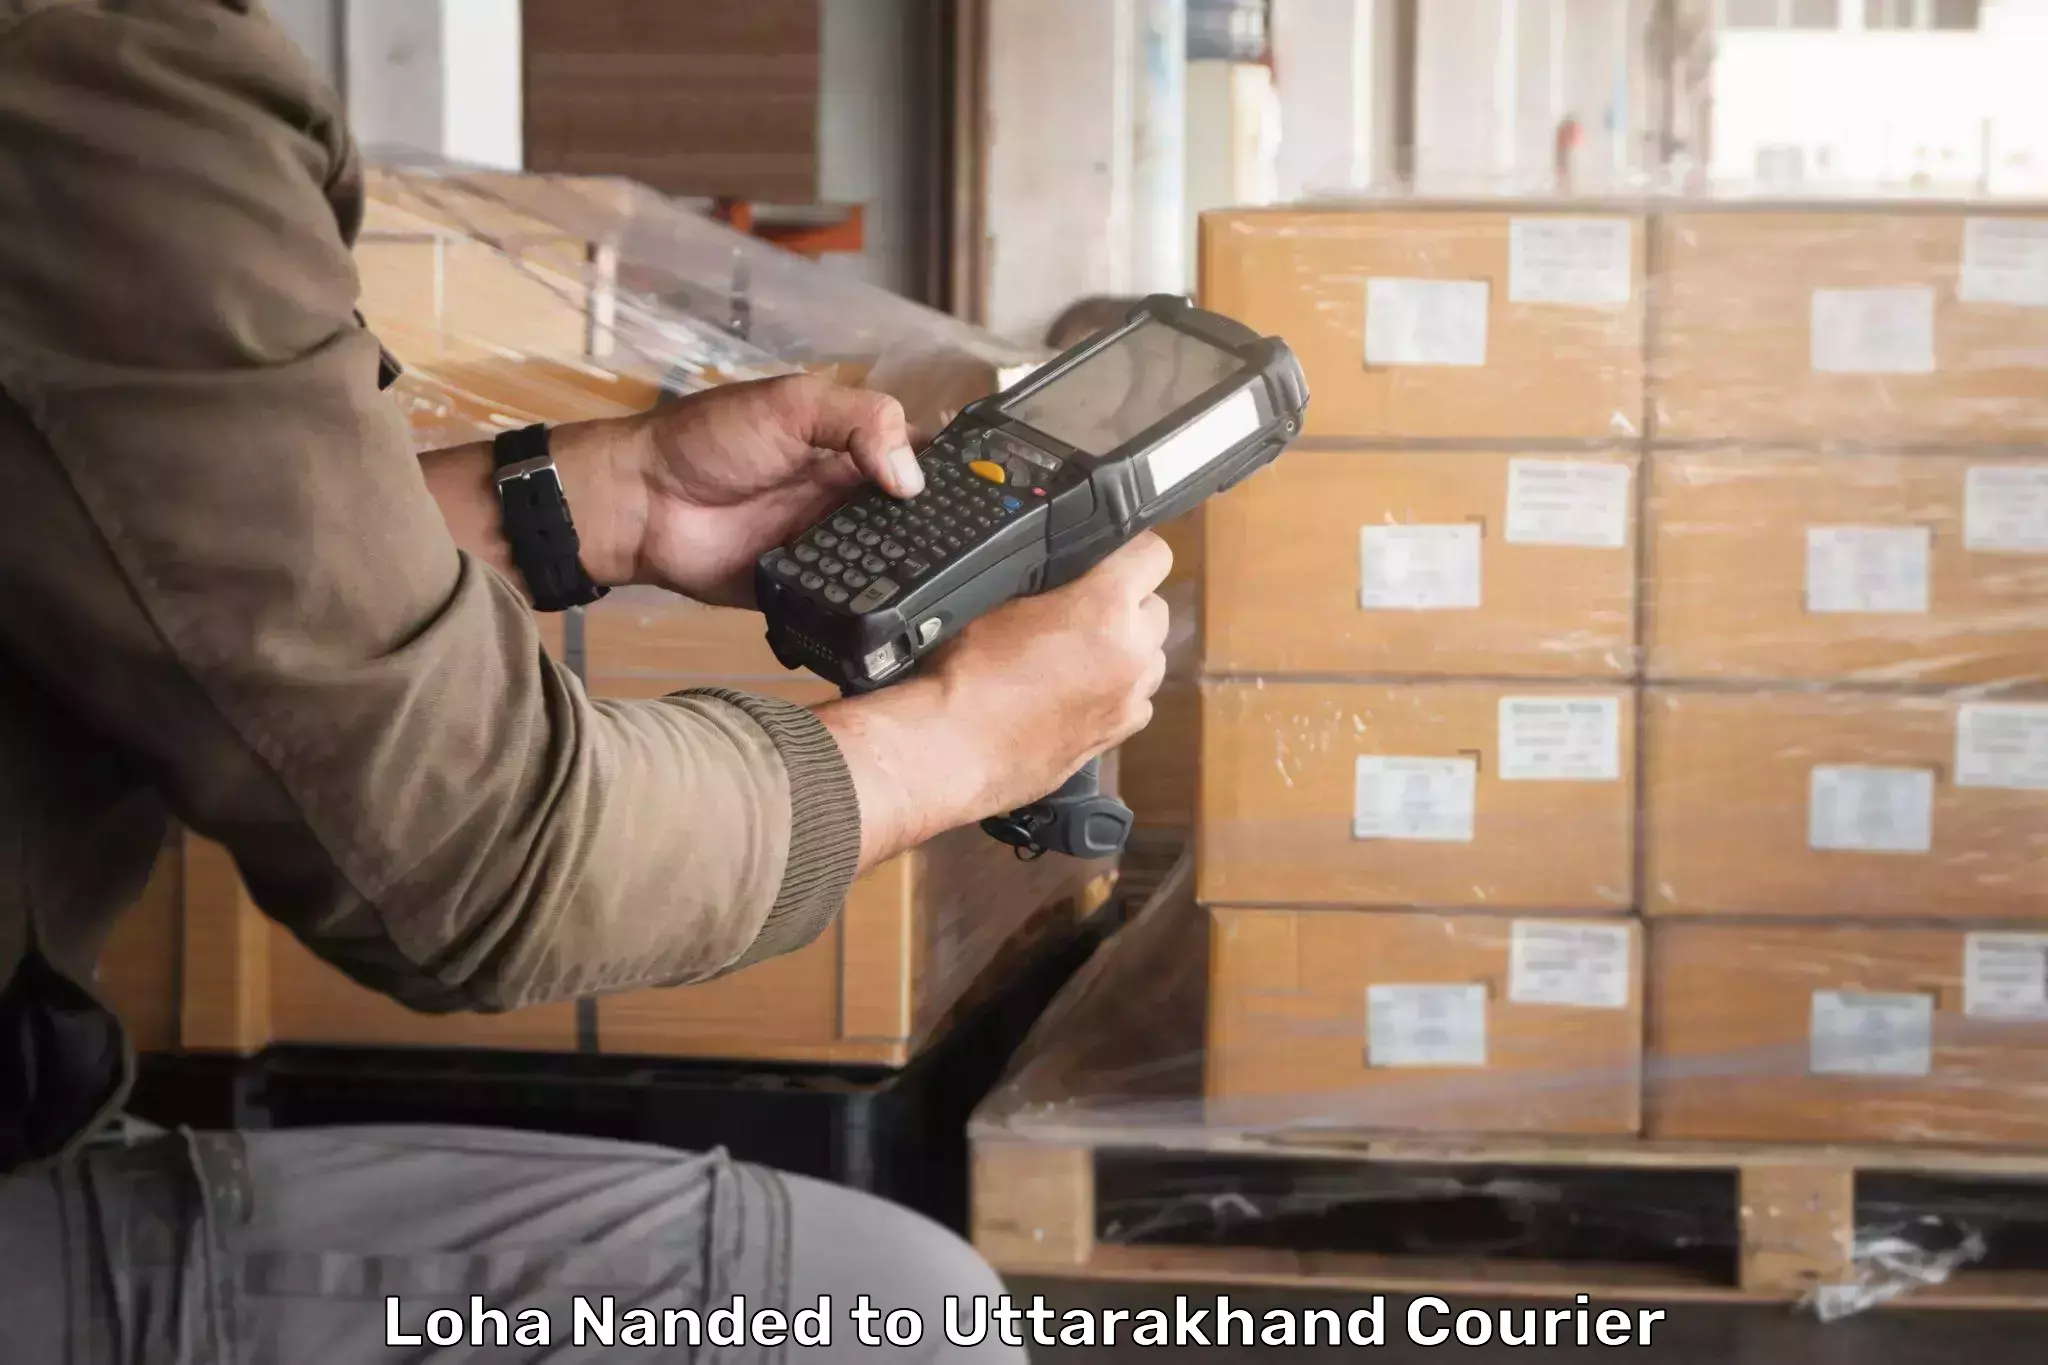 Tracking updates Loha Nanded to Uttarakhand